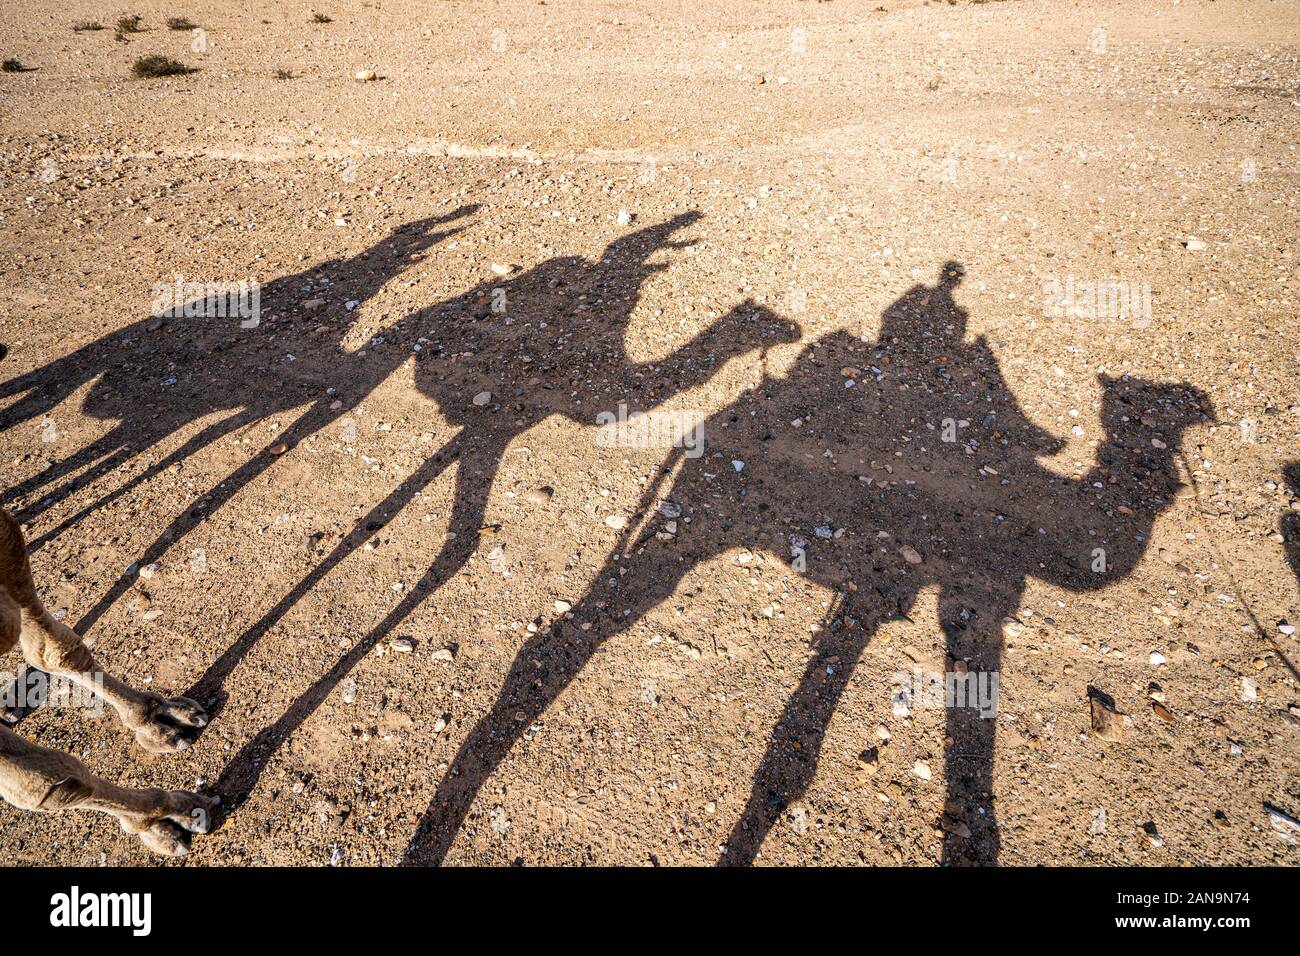 Shadows of dromedary camel caravan on the desert Agafay, Marrakech, Morocco Stock Photo